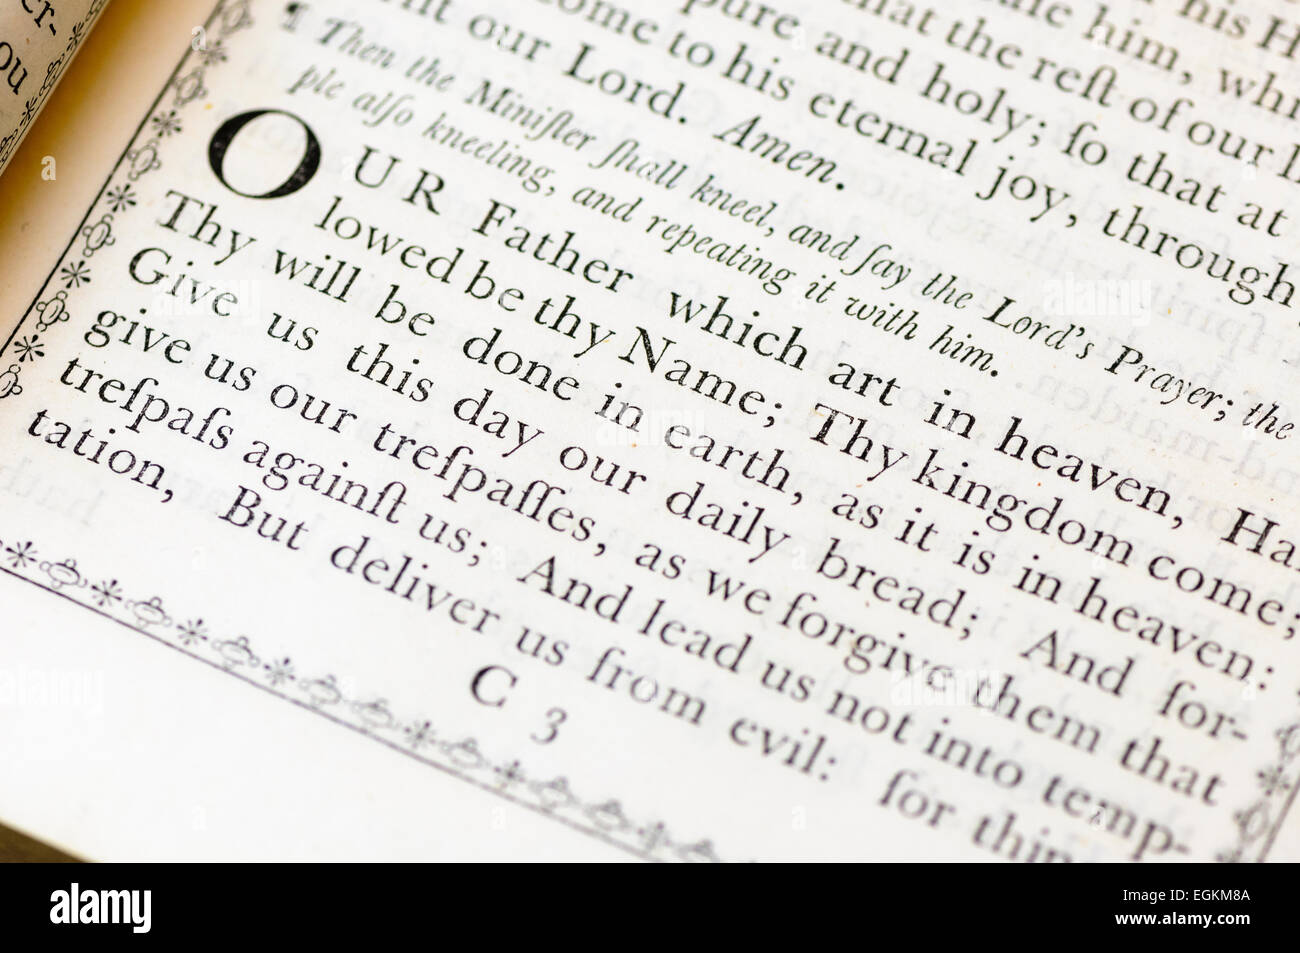 La preghiera del Signore della chiesa di Inghilterra libro di culto comune (1750) Foto Stock